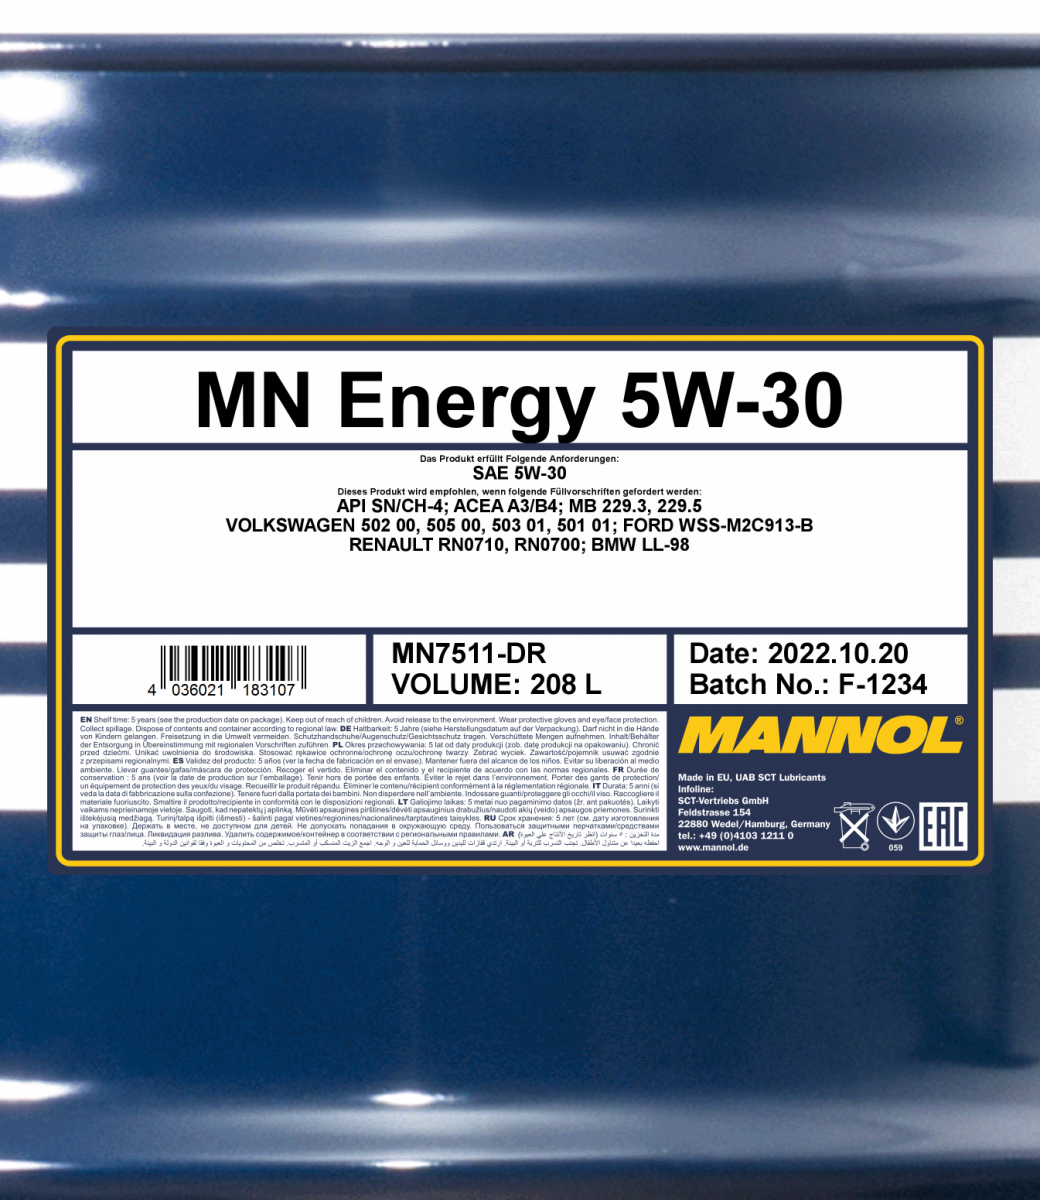 MANNOL Energy Formula OP 5W-30 7701 - Mannol America